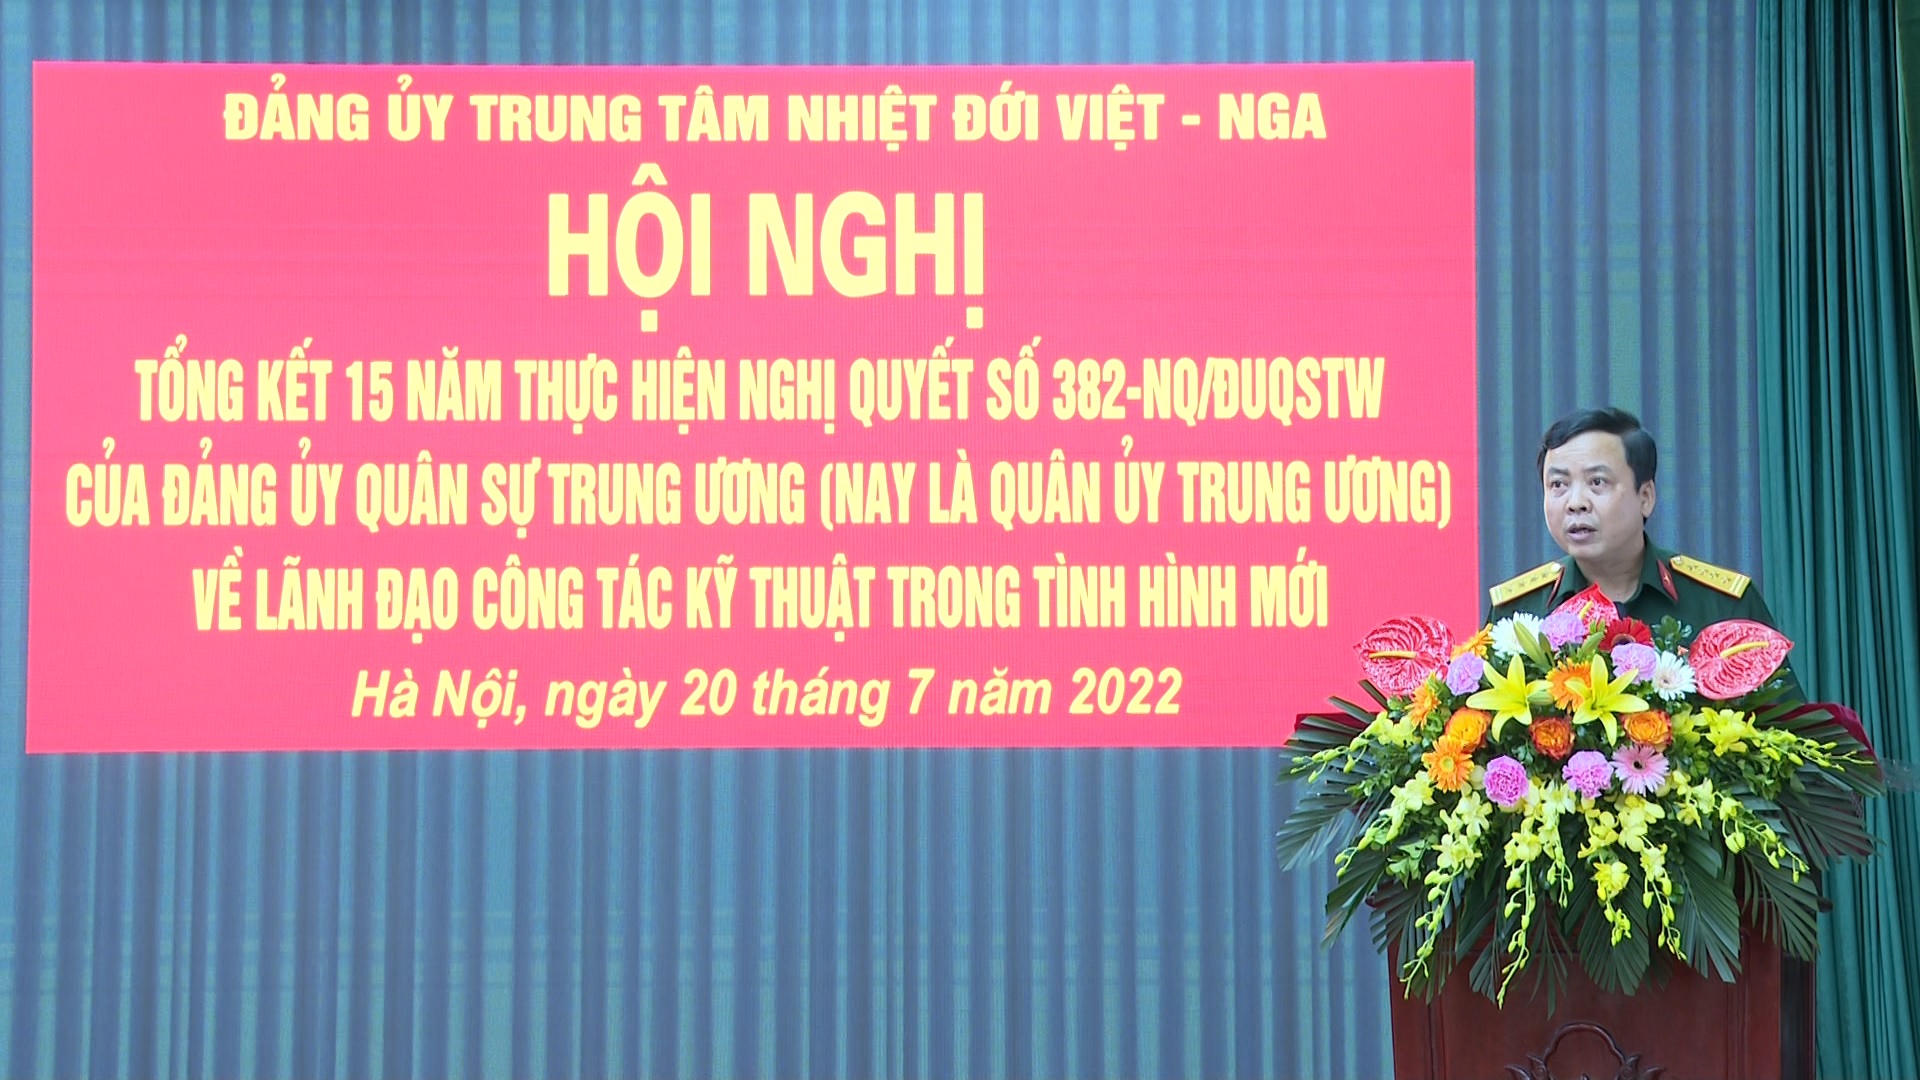 Đảng ủy Trung tâm Nhiệt đới Việt - Nga tổng kết 15 năm thực hiện Nghị quyết 382-NQ/ĐUQSTW